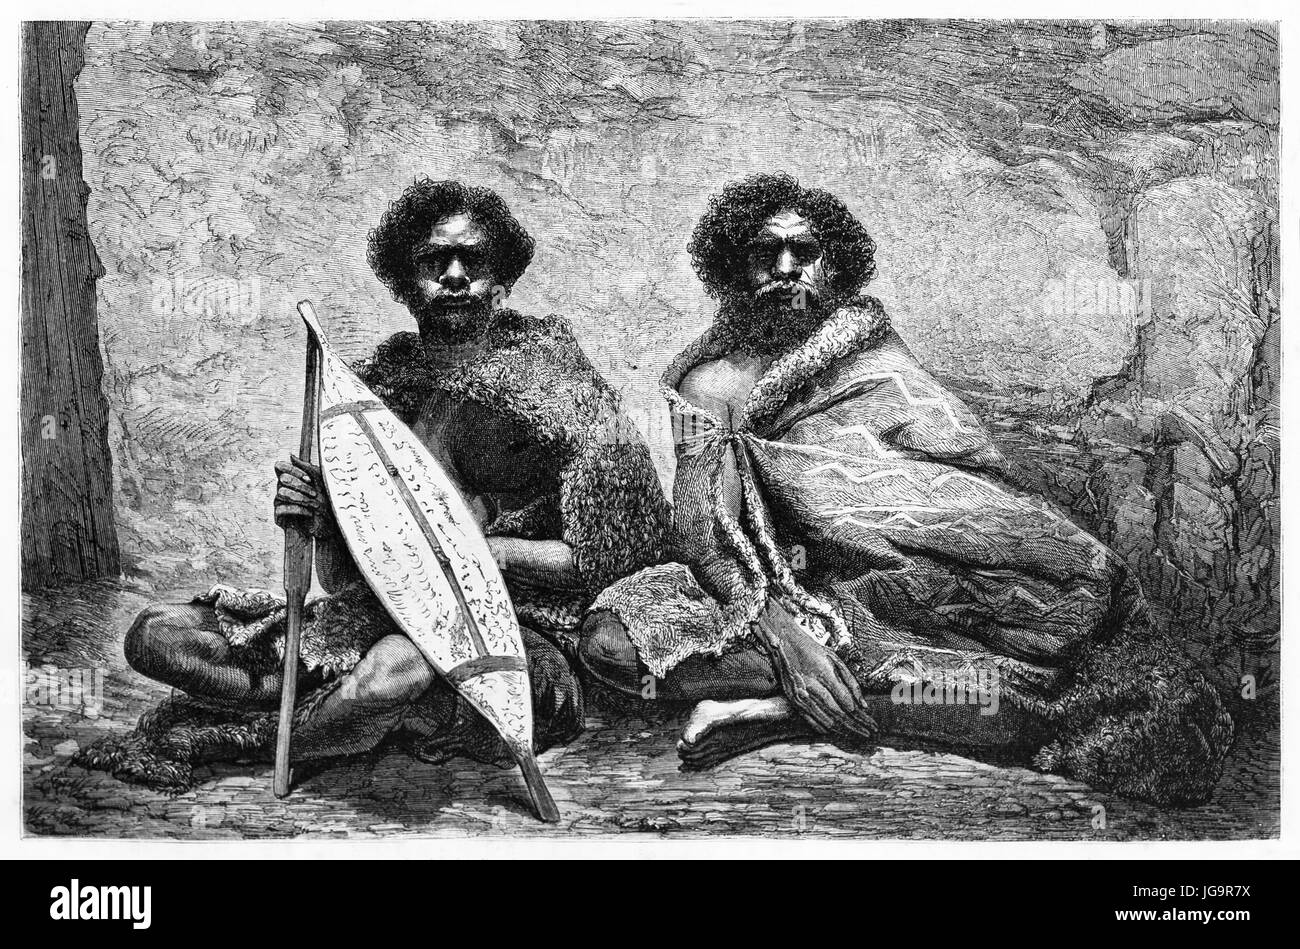 Ancien portrait gravé d'aborigènes australiens. Créé par Riou et Maurand après photo d'auteur inconnu, publié sur le Tour du Monde, Paris, 1861 Banque D'Images